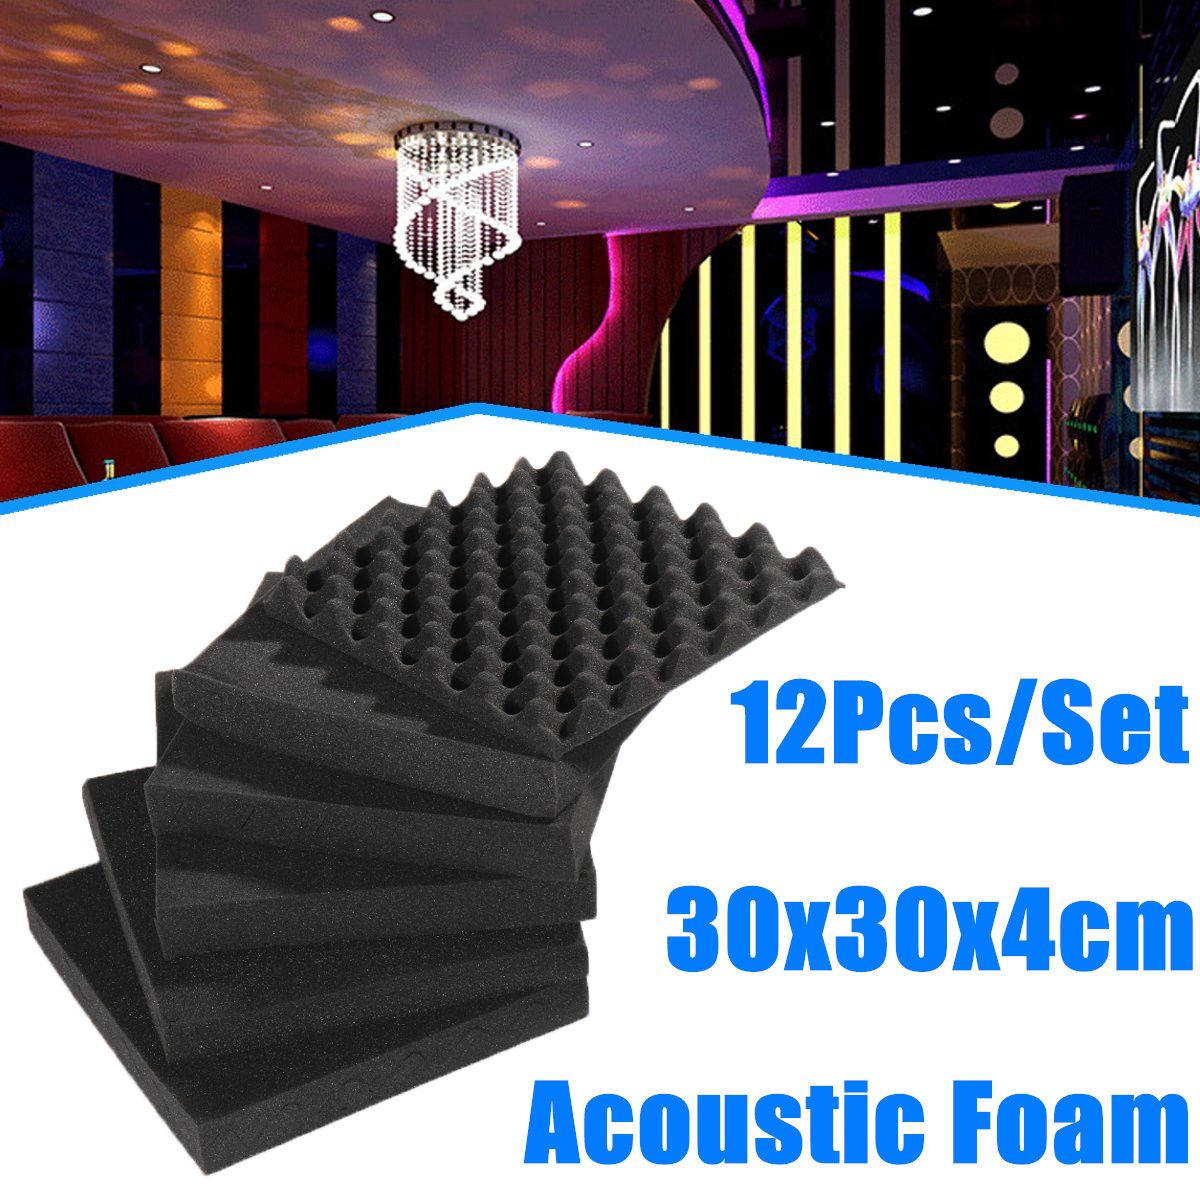 12PcsSet-Studio-Acoustic-Foam-Panels-Tile-Sound-Insulation-Proofing-30x30x4cm-1731451